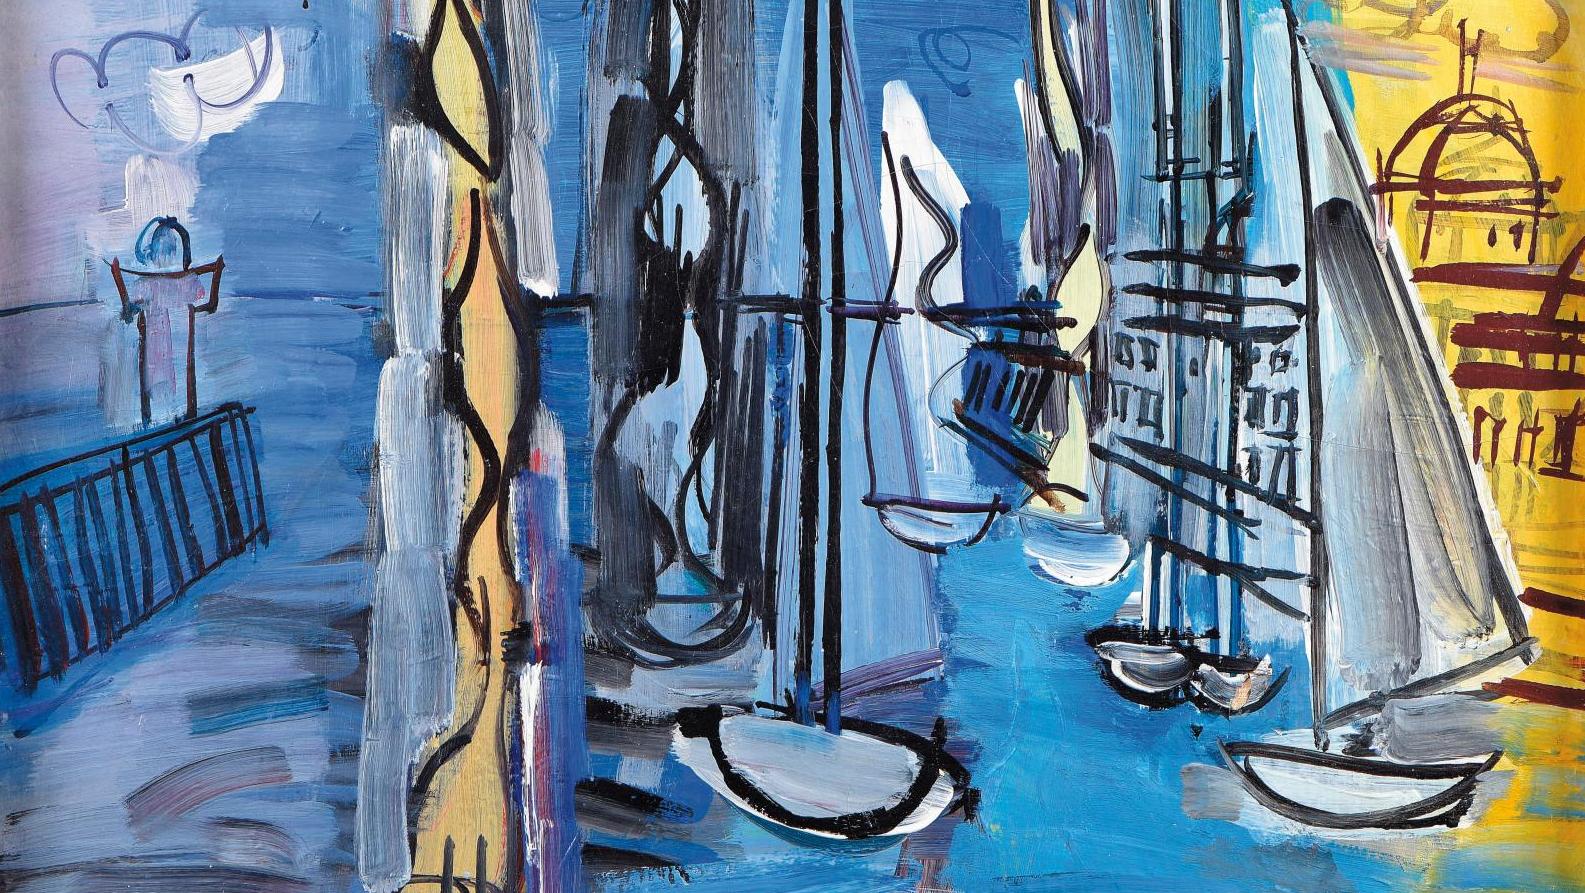 Raoul Dufy (1877-1953), Voiliers dans un port, huile sur toile, 46 x 55 cm (détail).... Une collection normande célèbre les peintres de cette terre d’accueil picturale